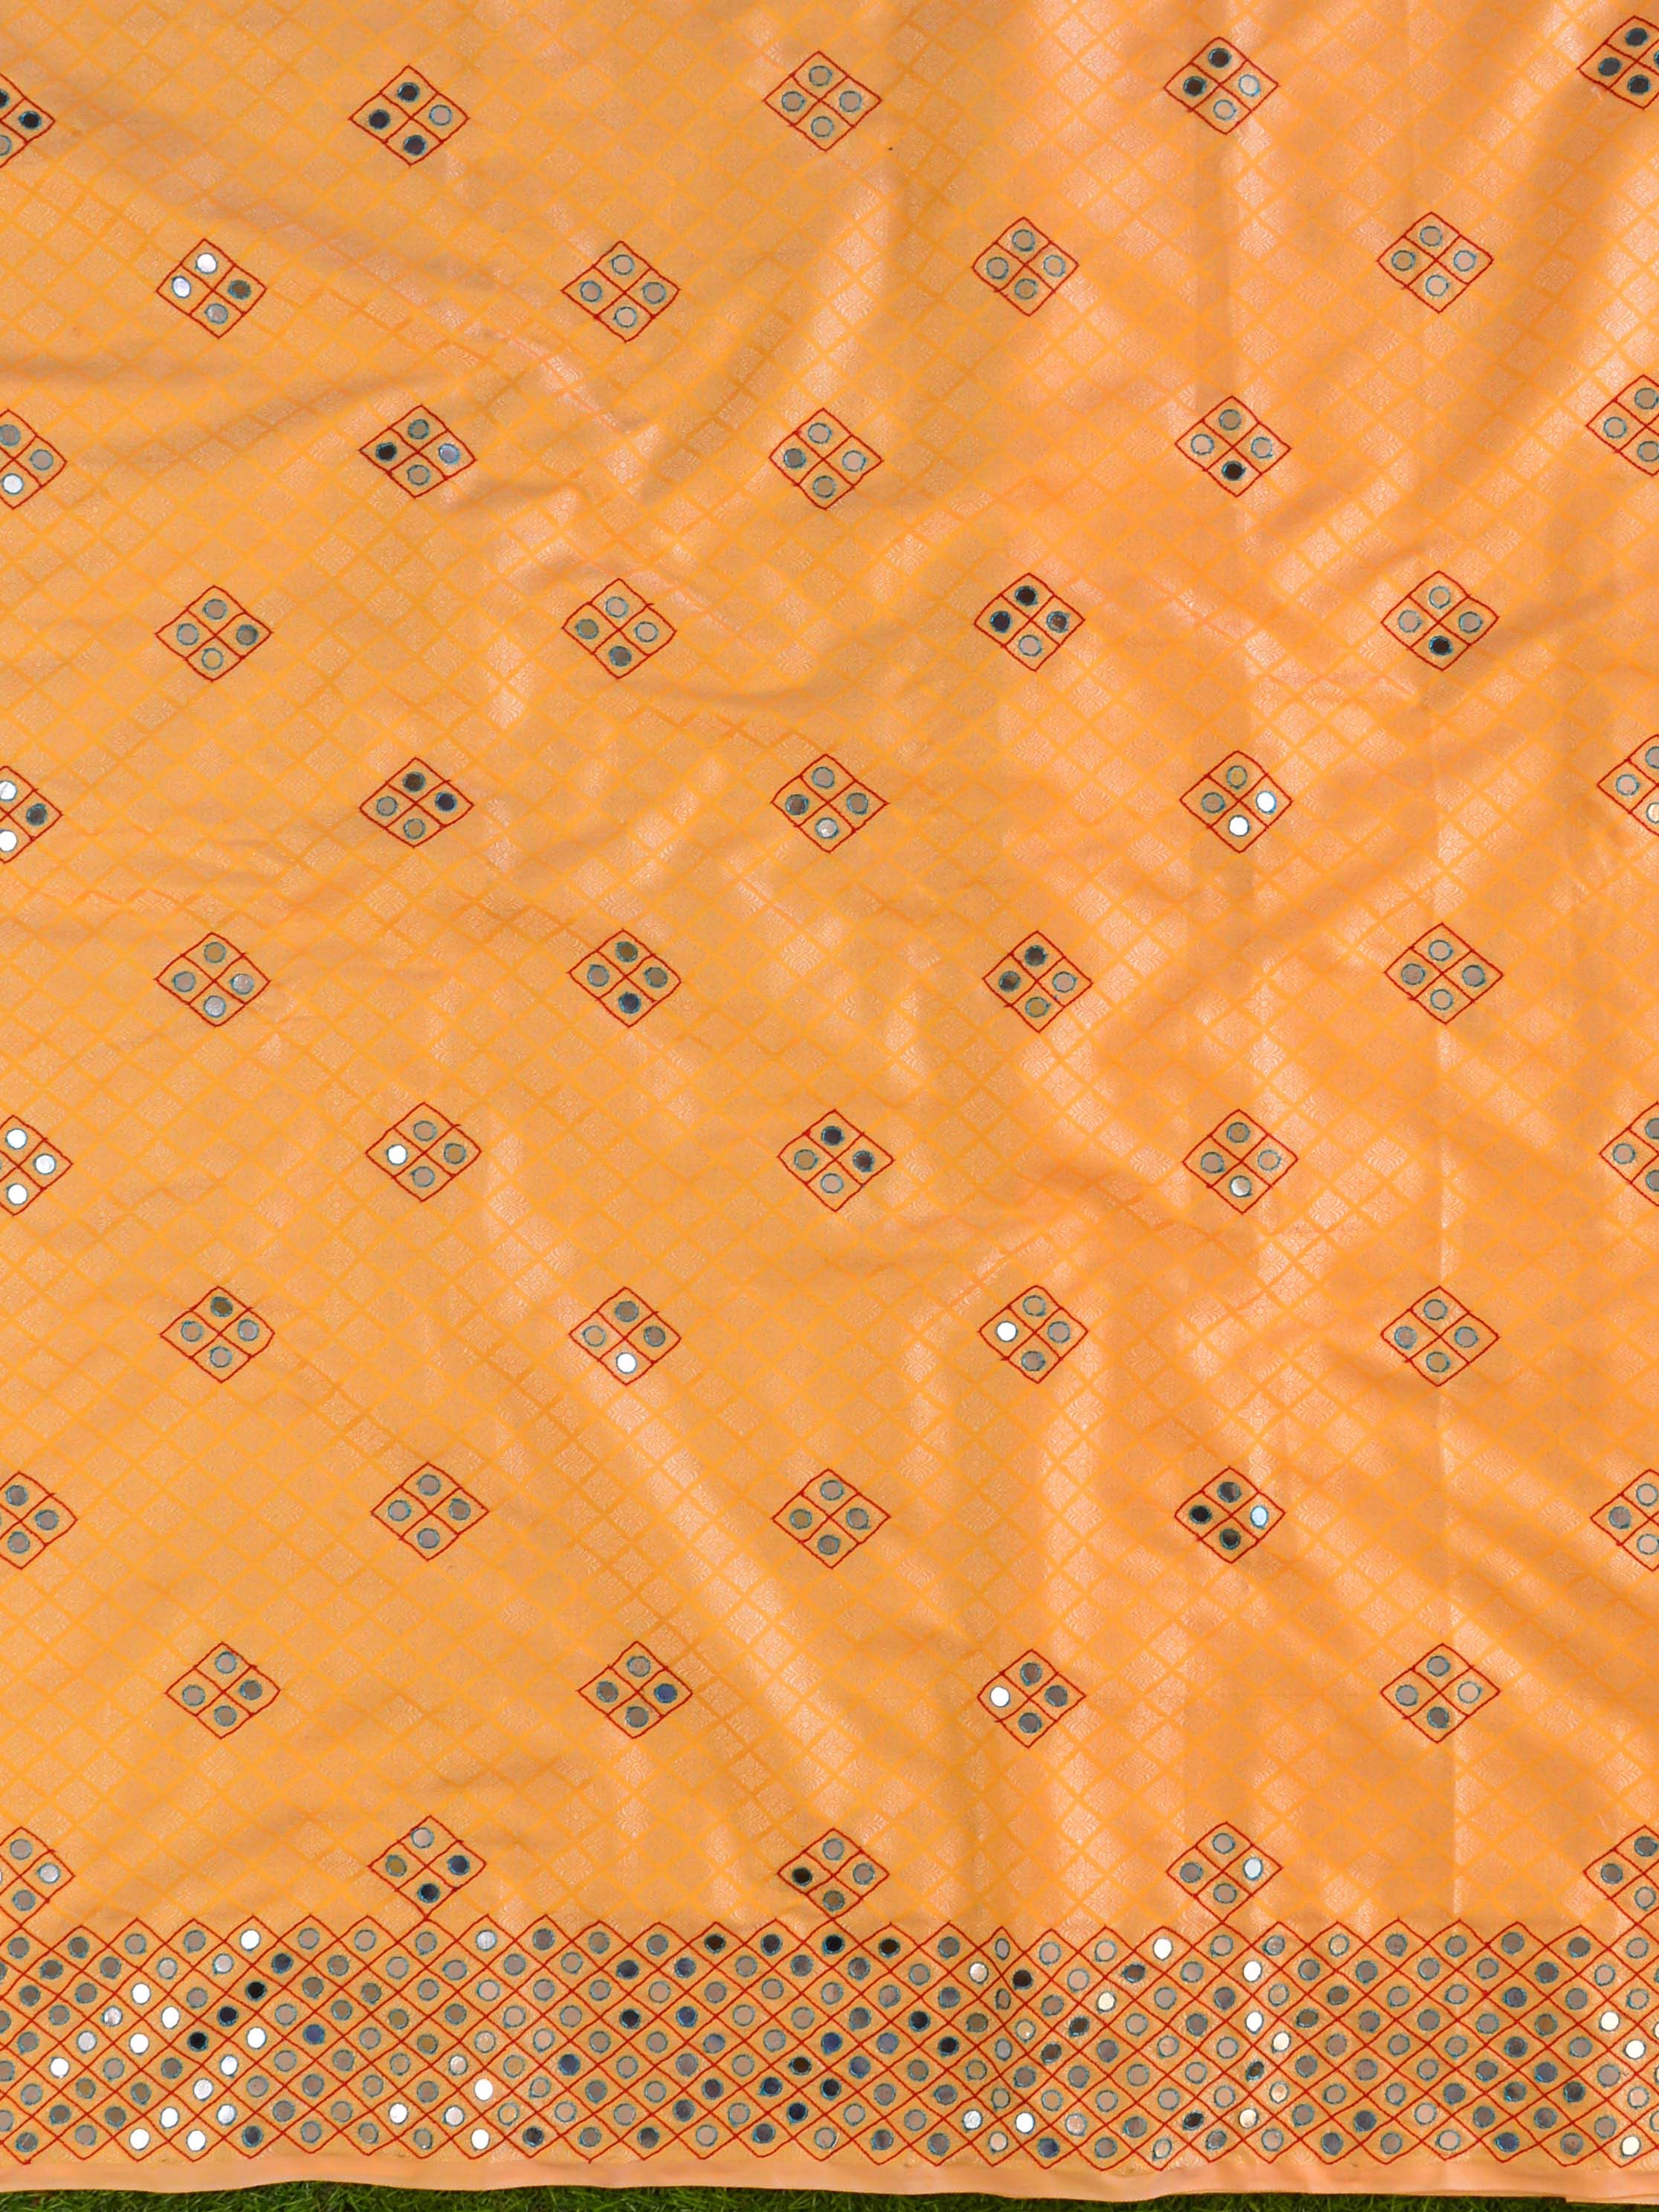 Banarasee Brocade Salwar Kameez Fabric With Mirror Work-Yellow & Grey